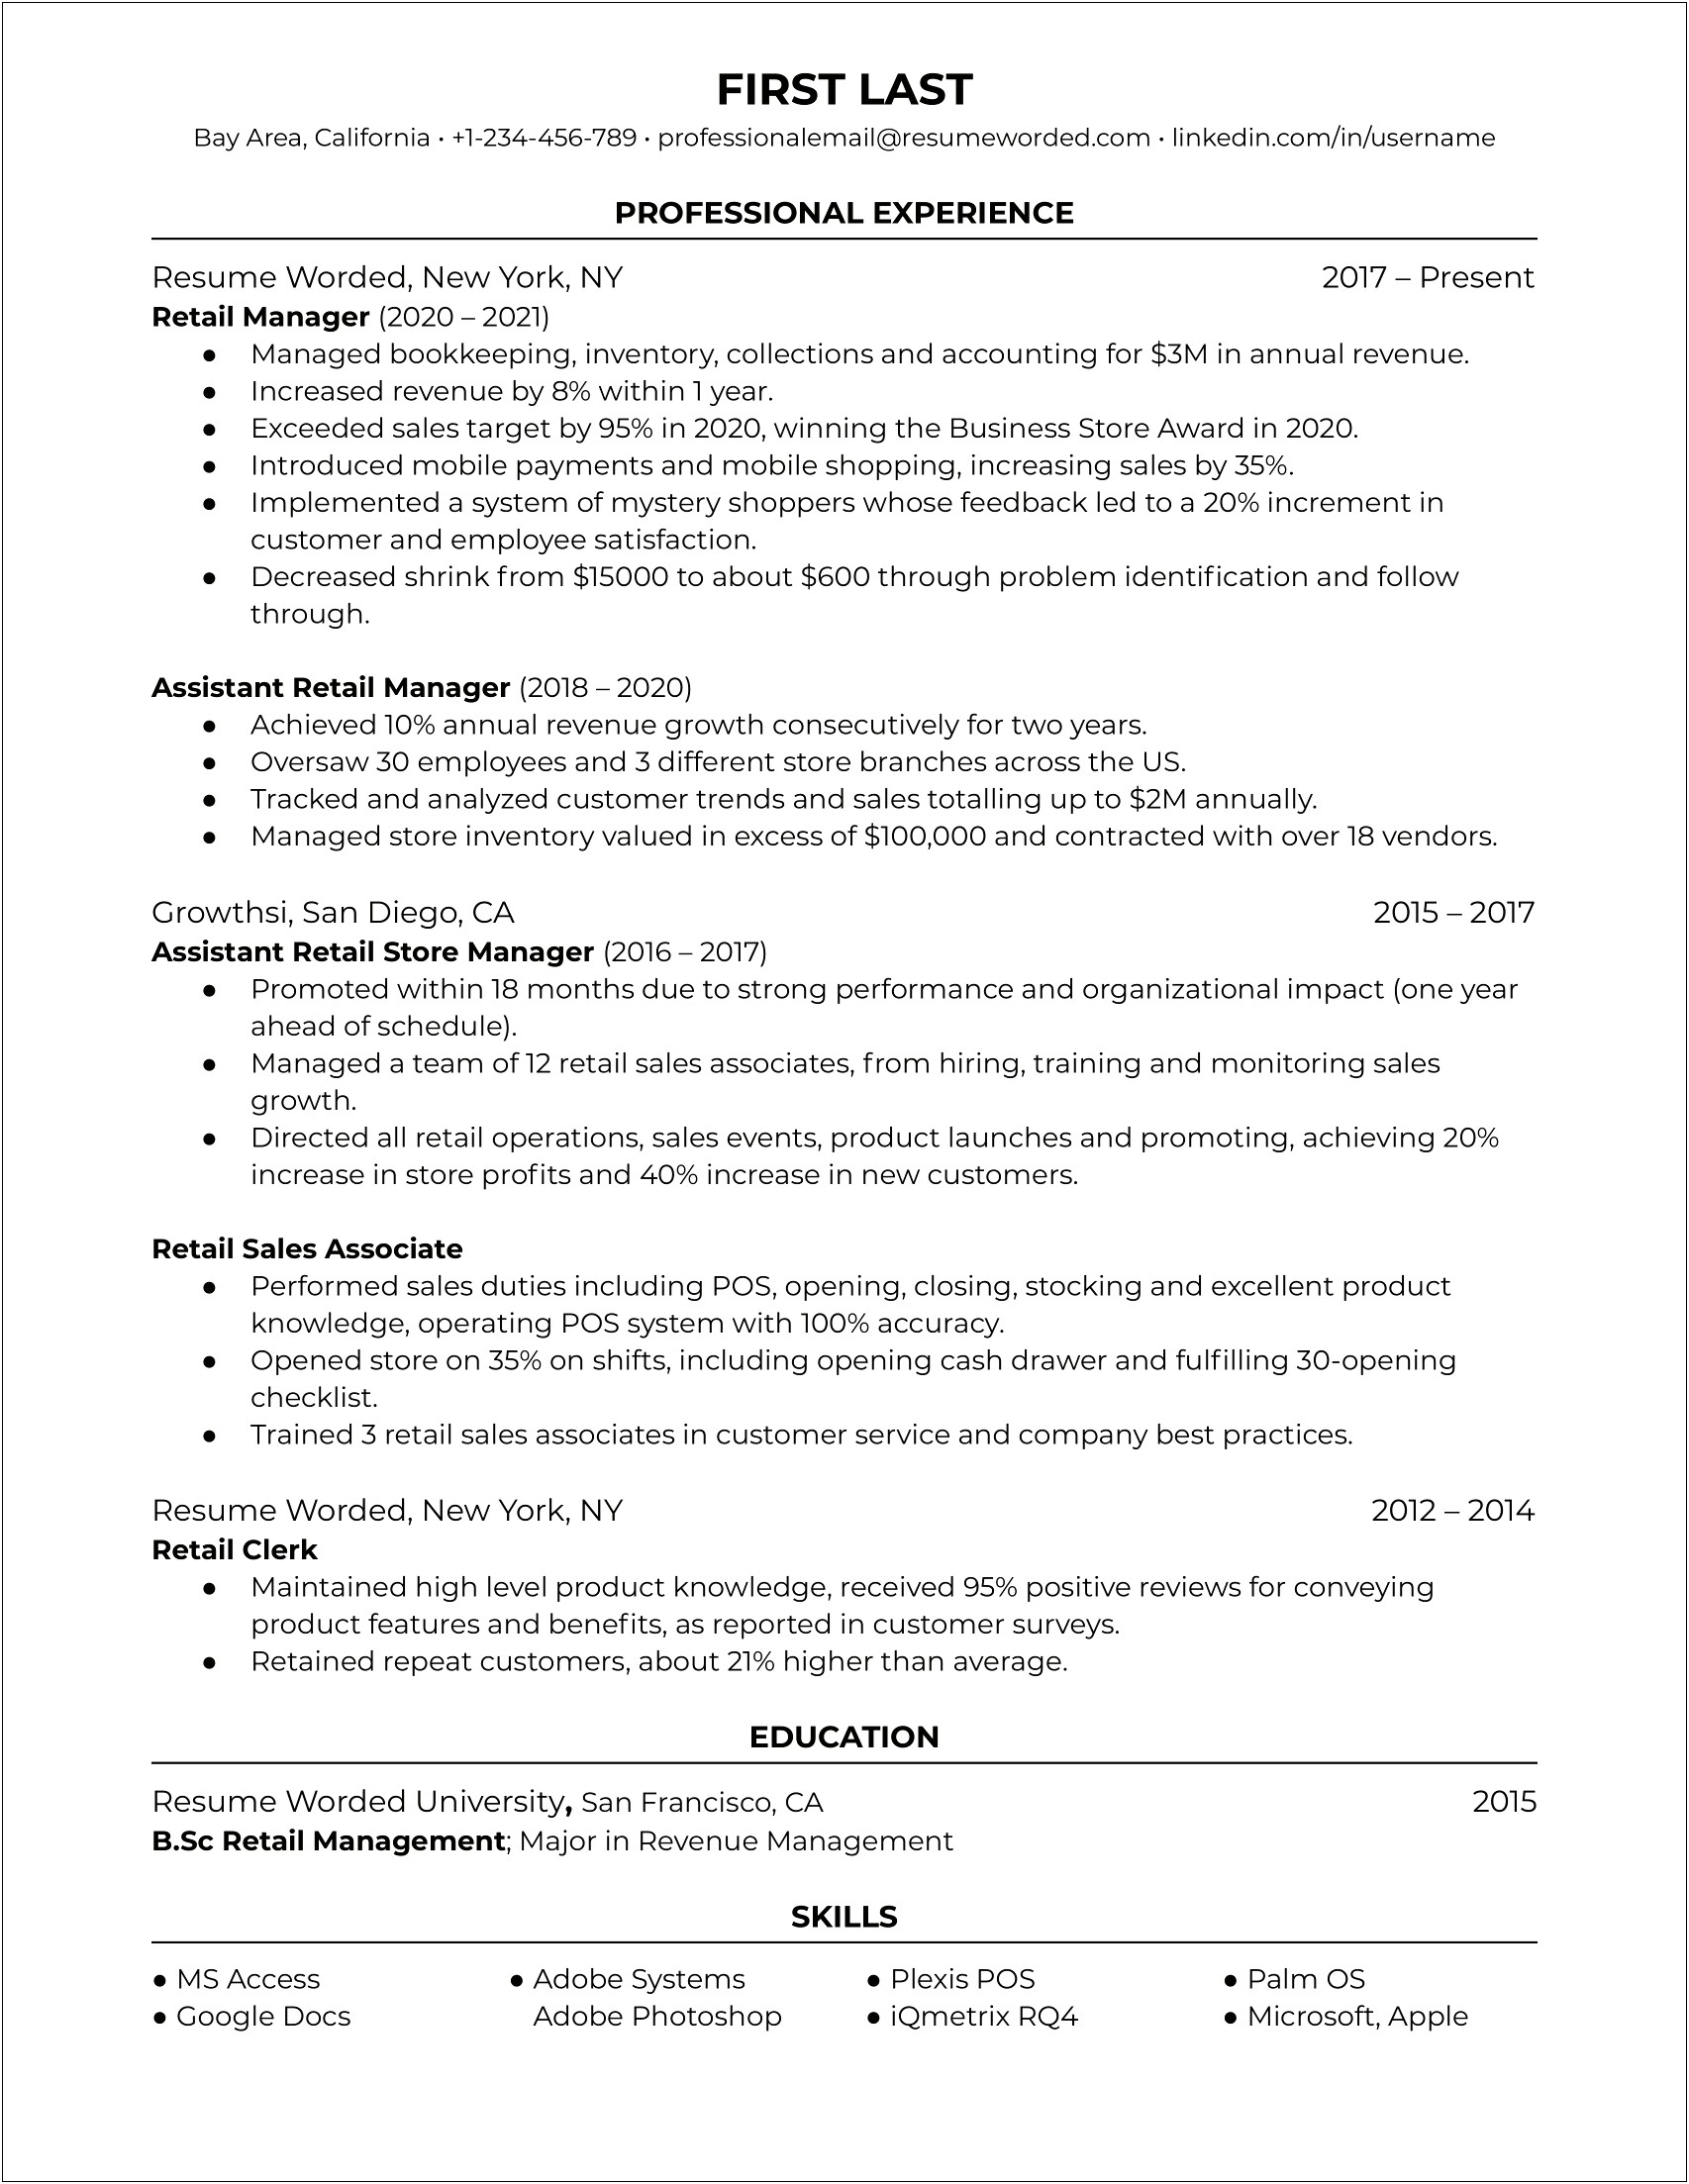 Pharmacy Manager Job Description For Resume